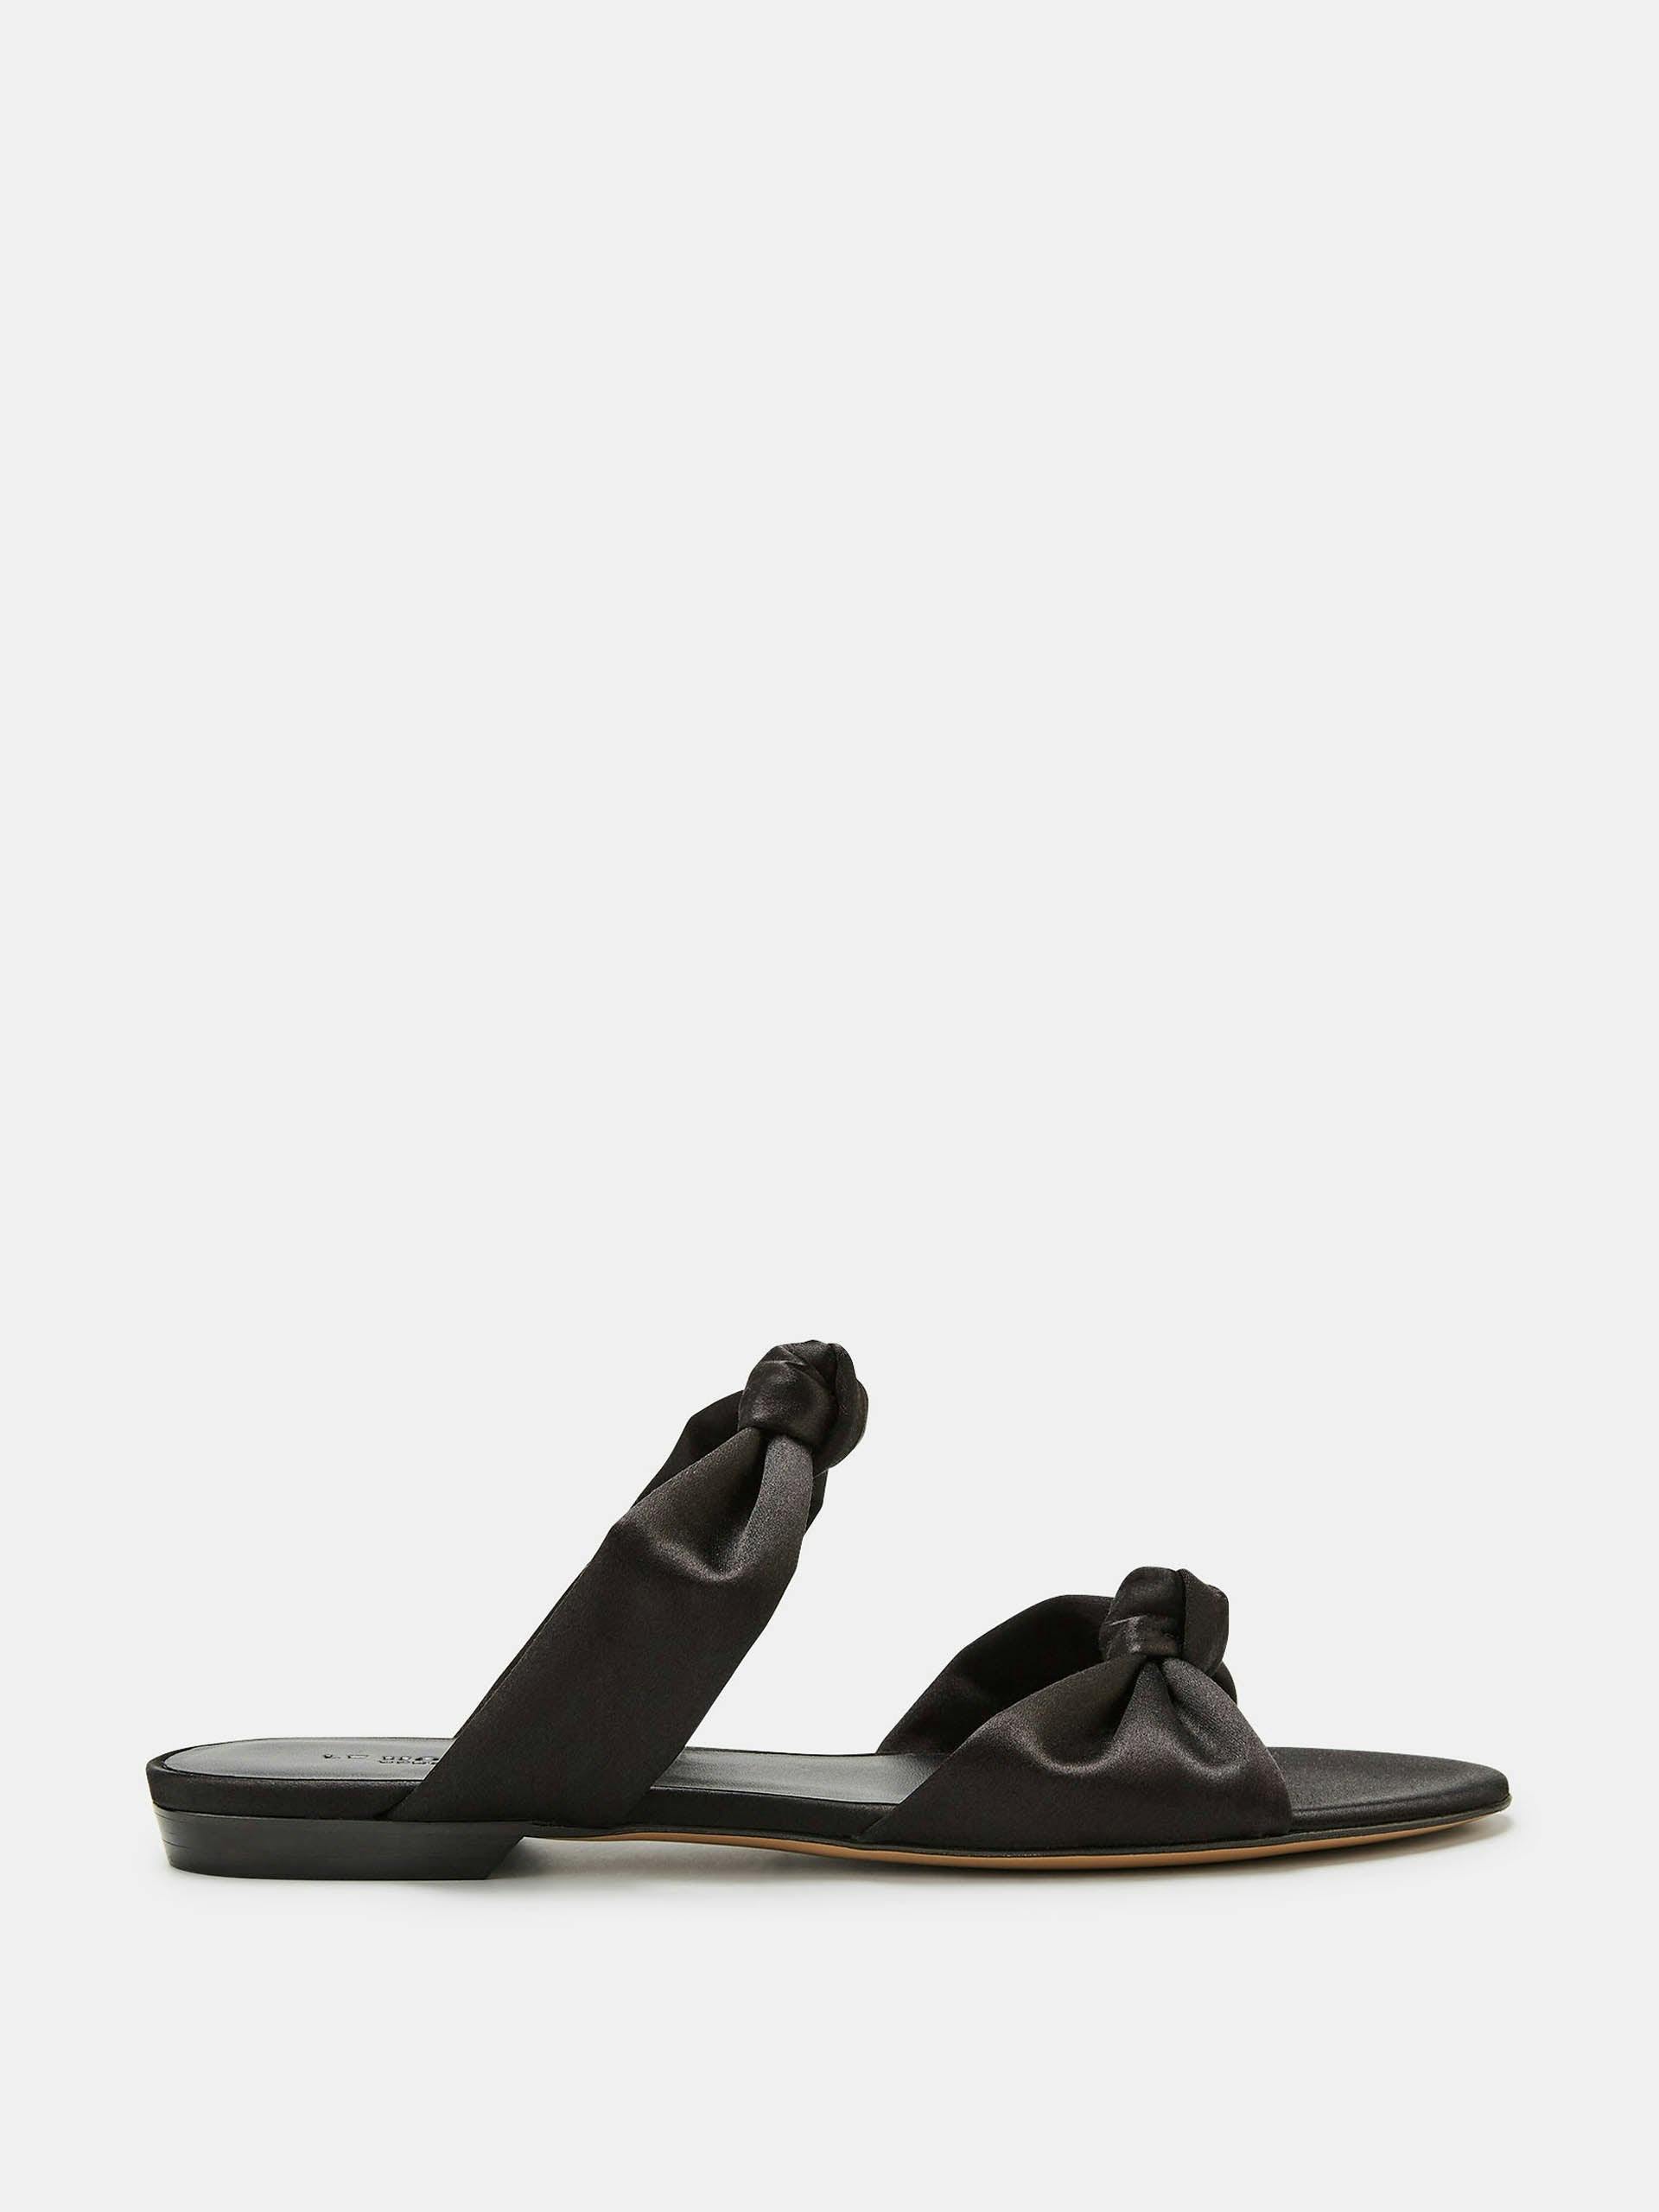 Black satin knot flat sandals